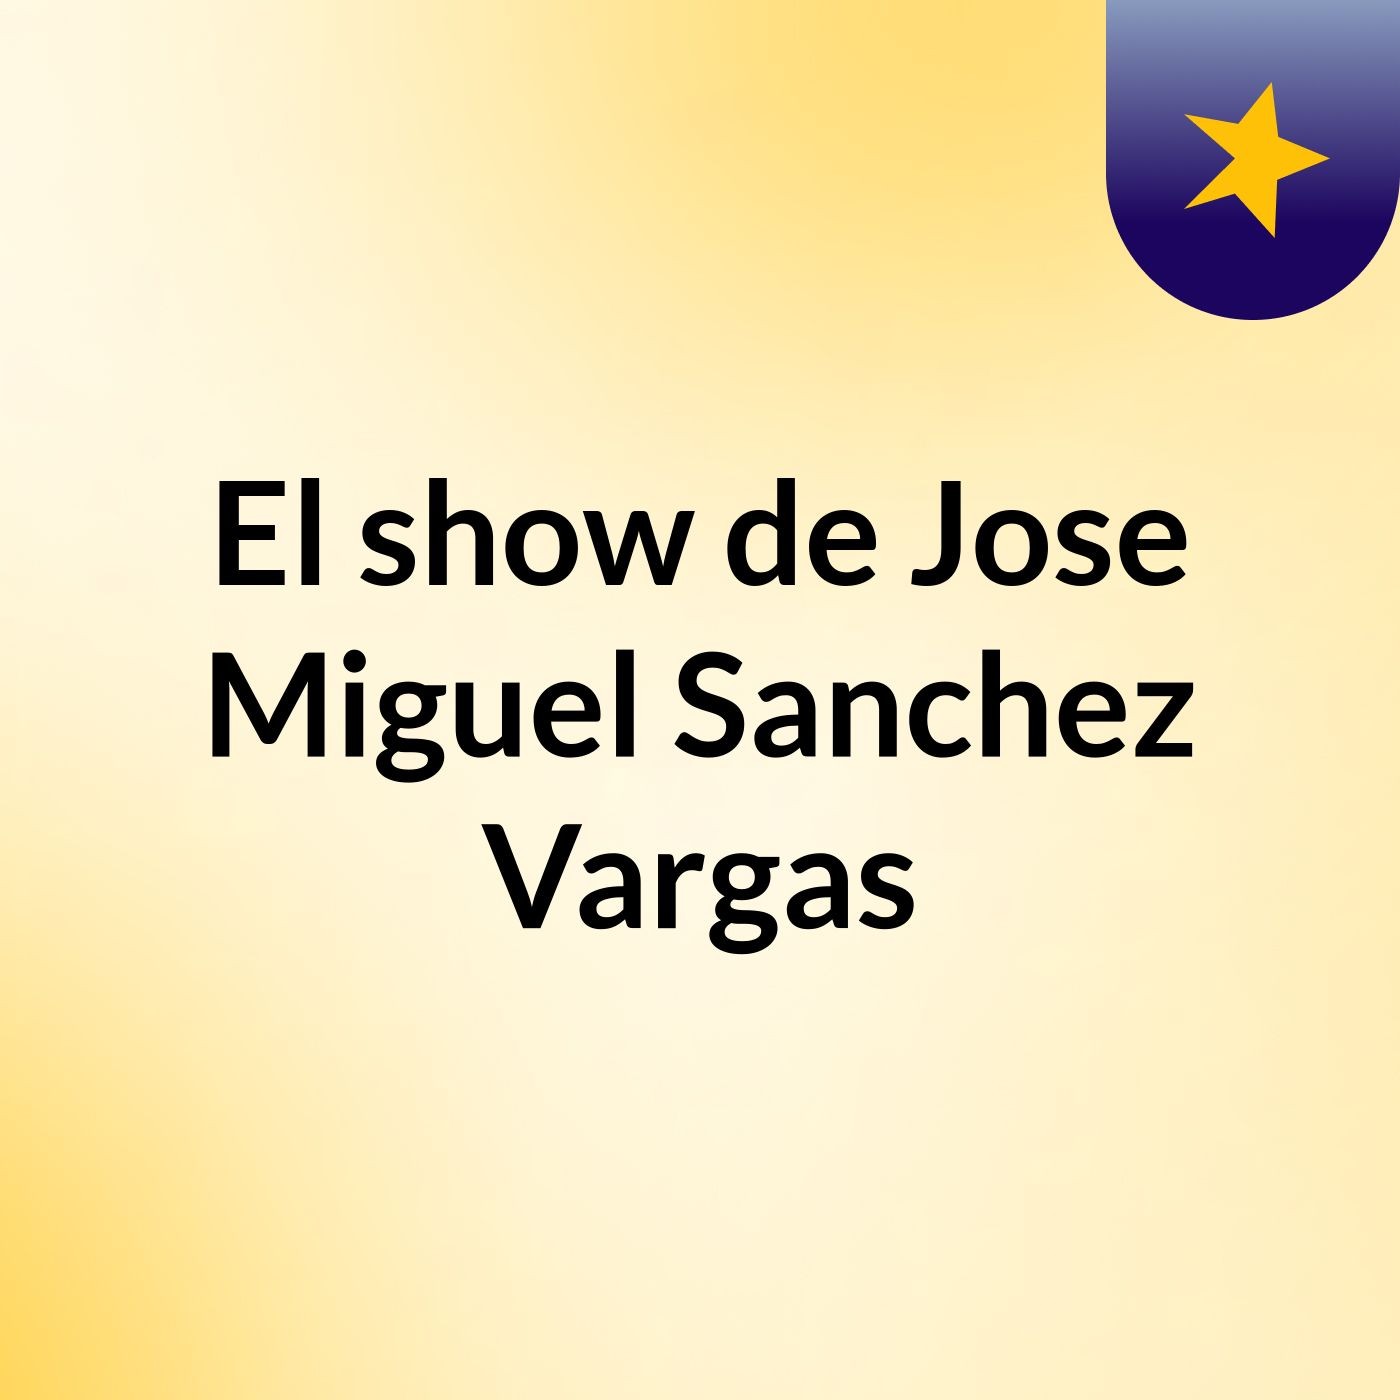 El show de Jose Miguel Sanchez Vargas